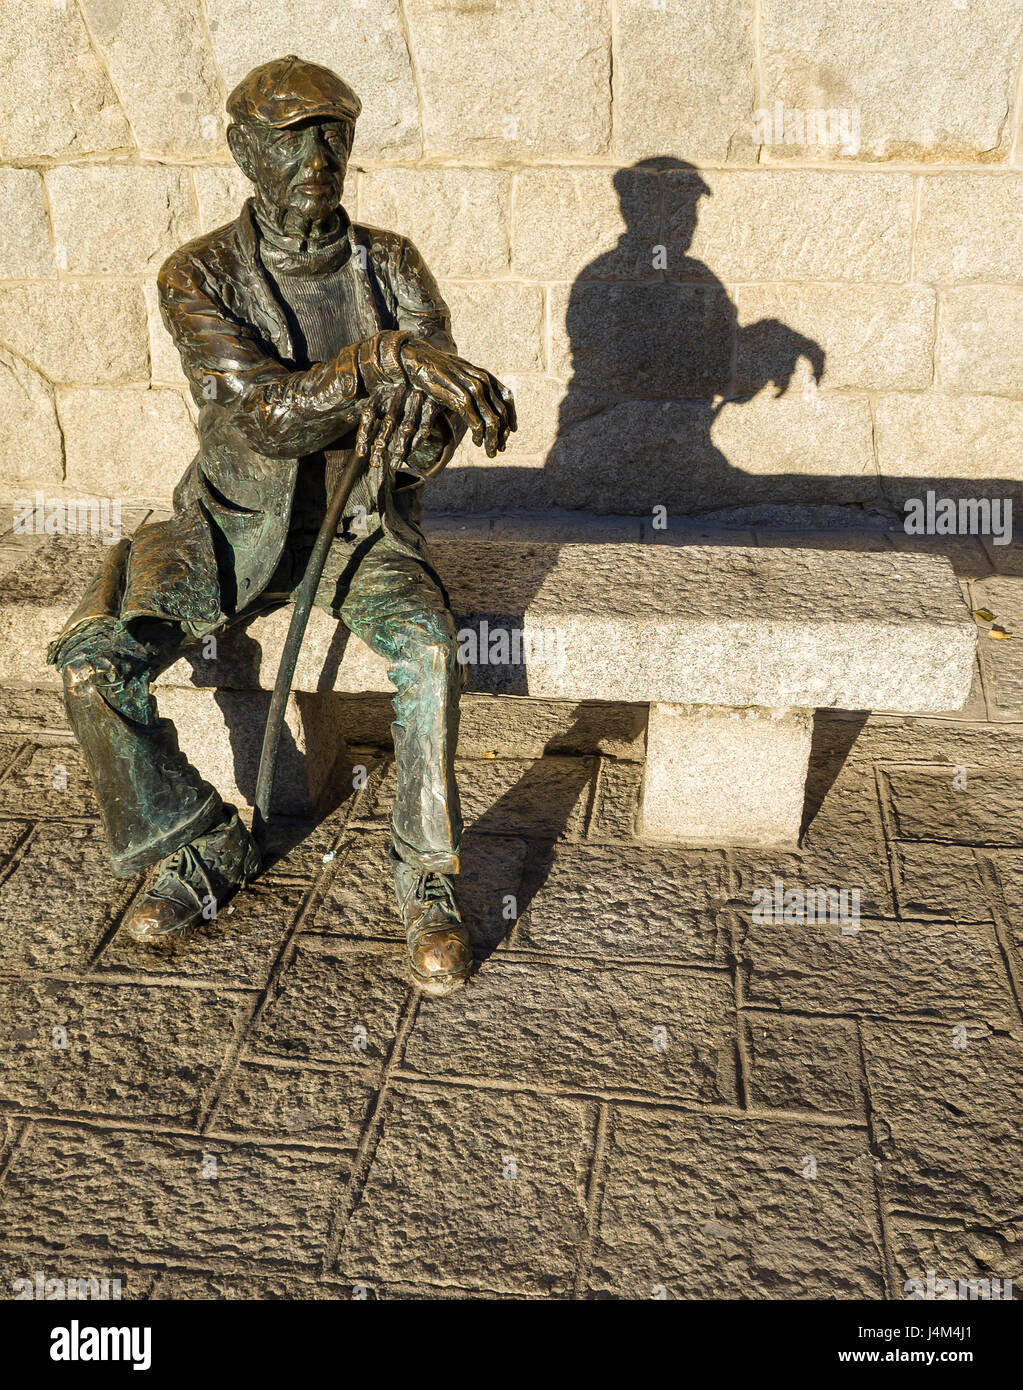 Estatua de onu anciano en la plaza Mayor del pueblo de Guadarrama, Madrid, España. Foto Stock